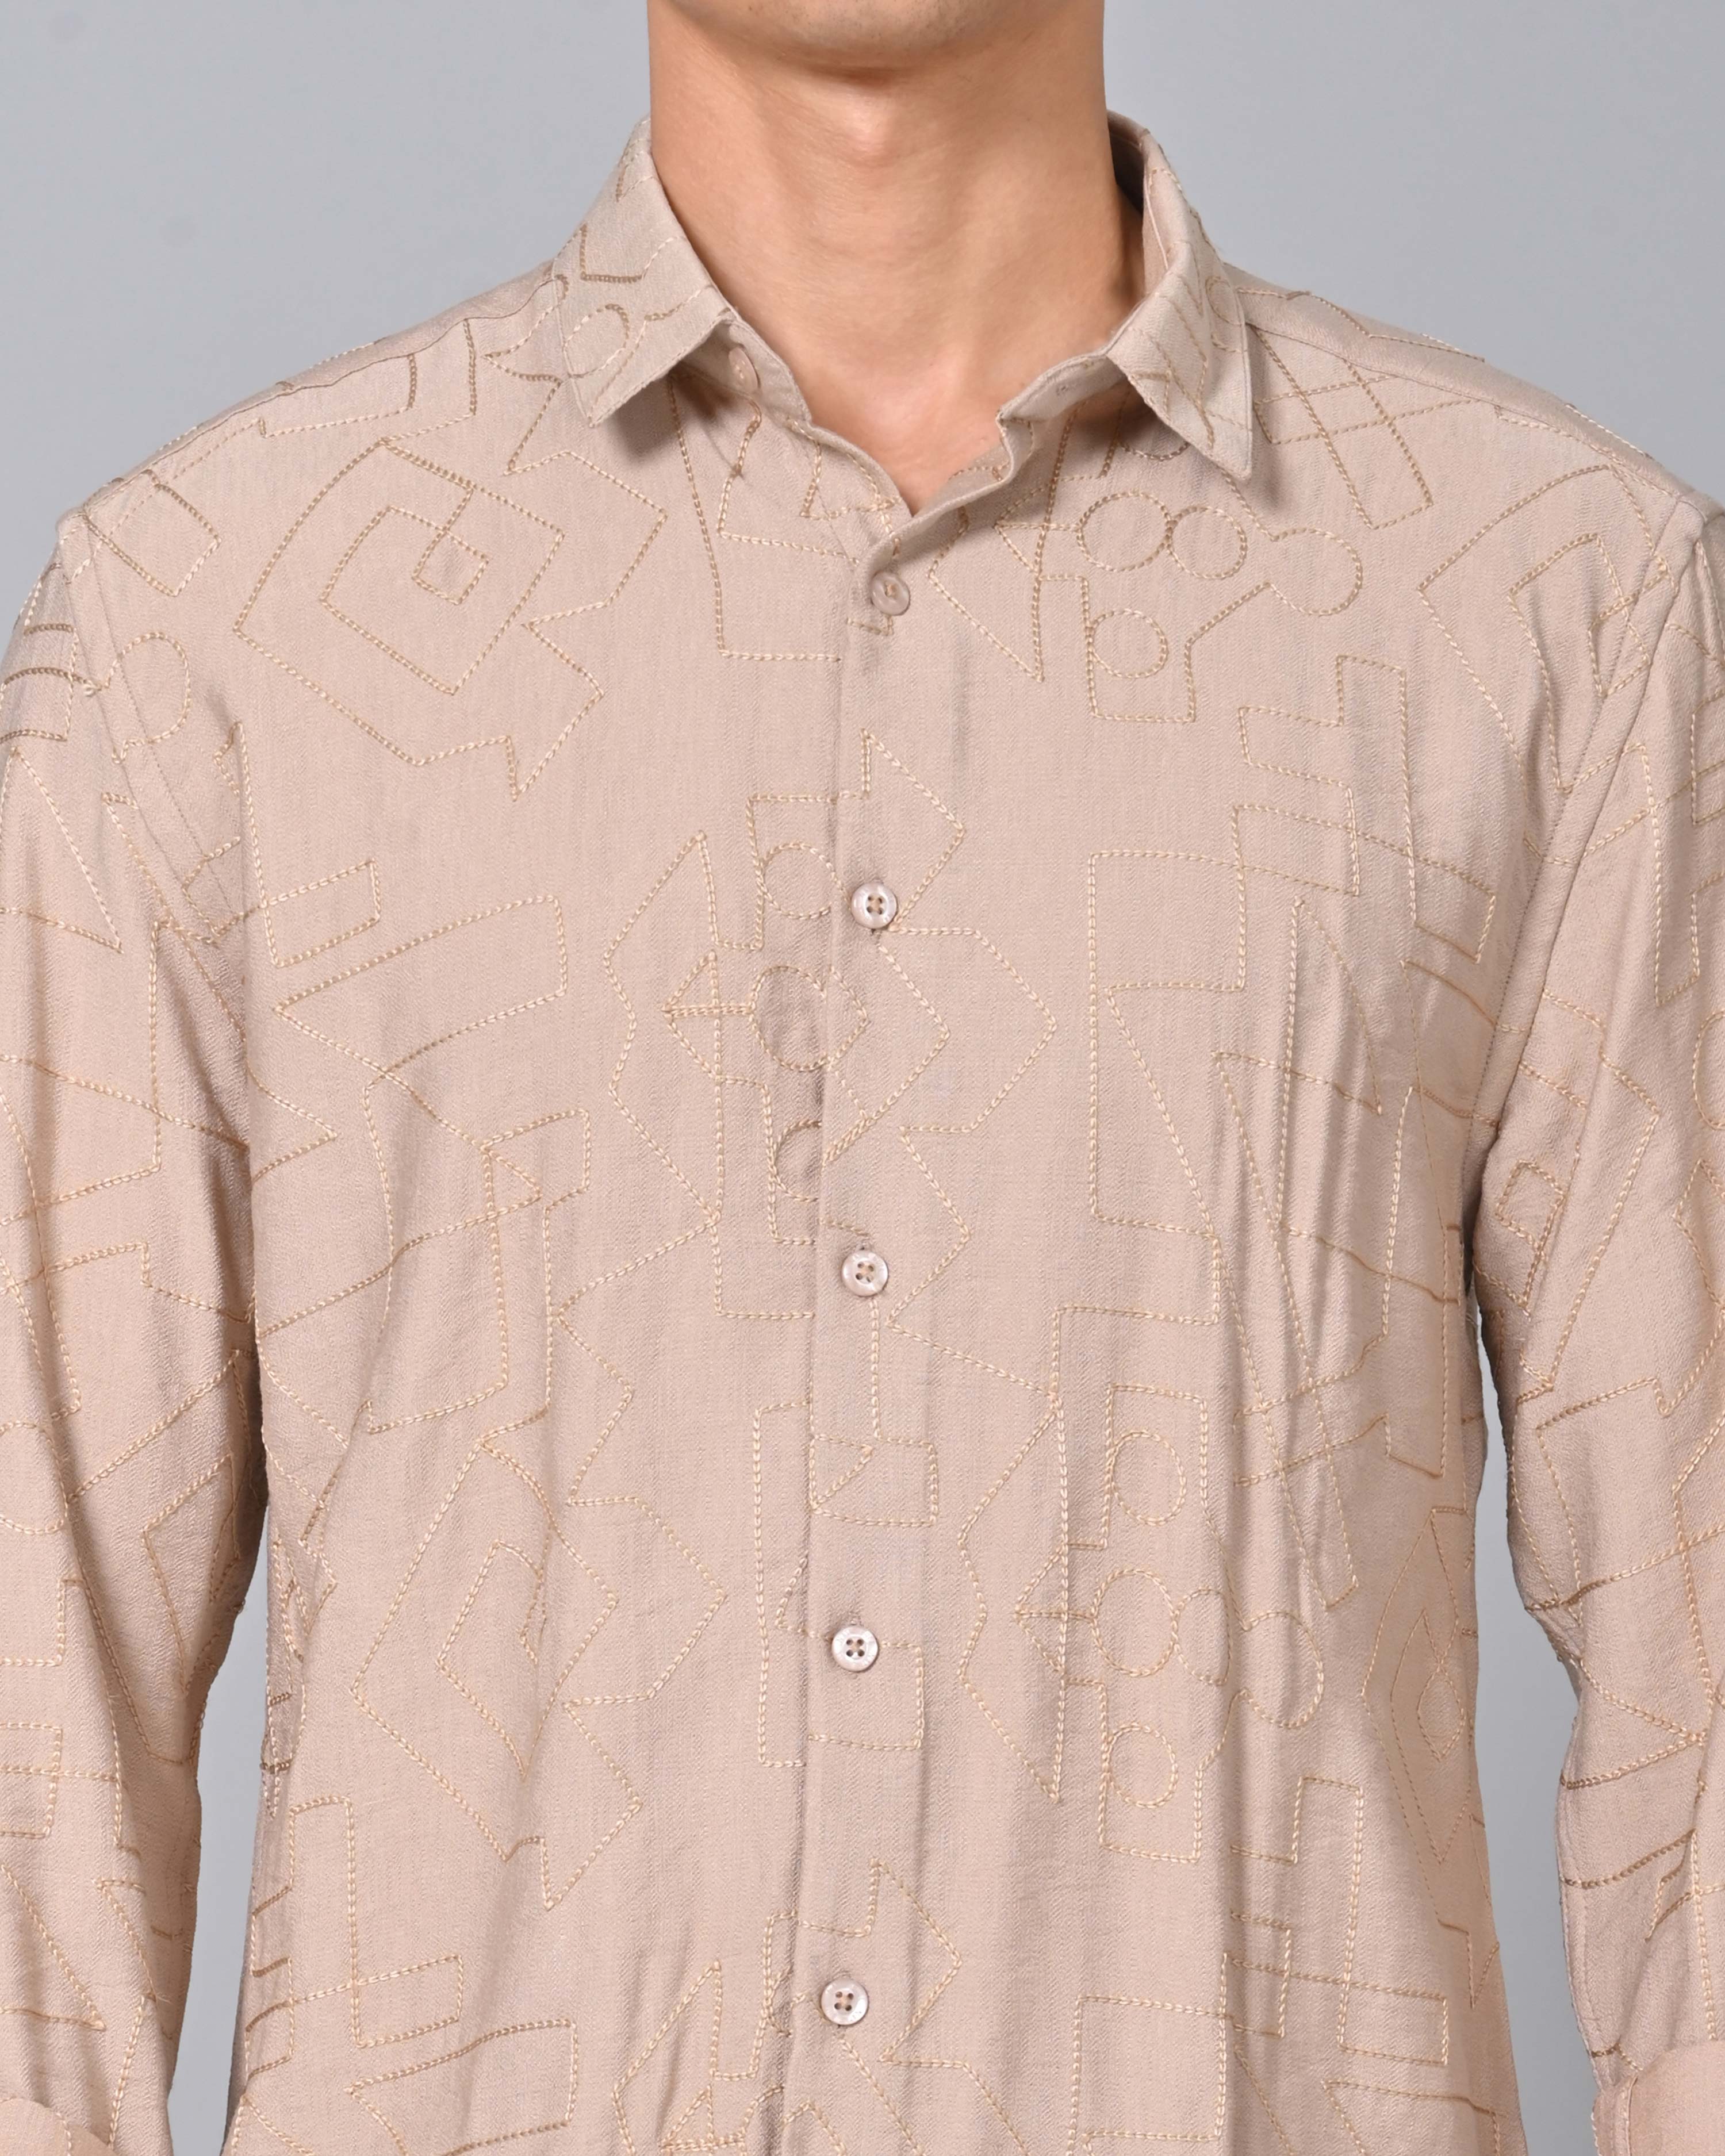 Shop Men's Embroidered Sand Color Shirt